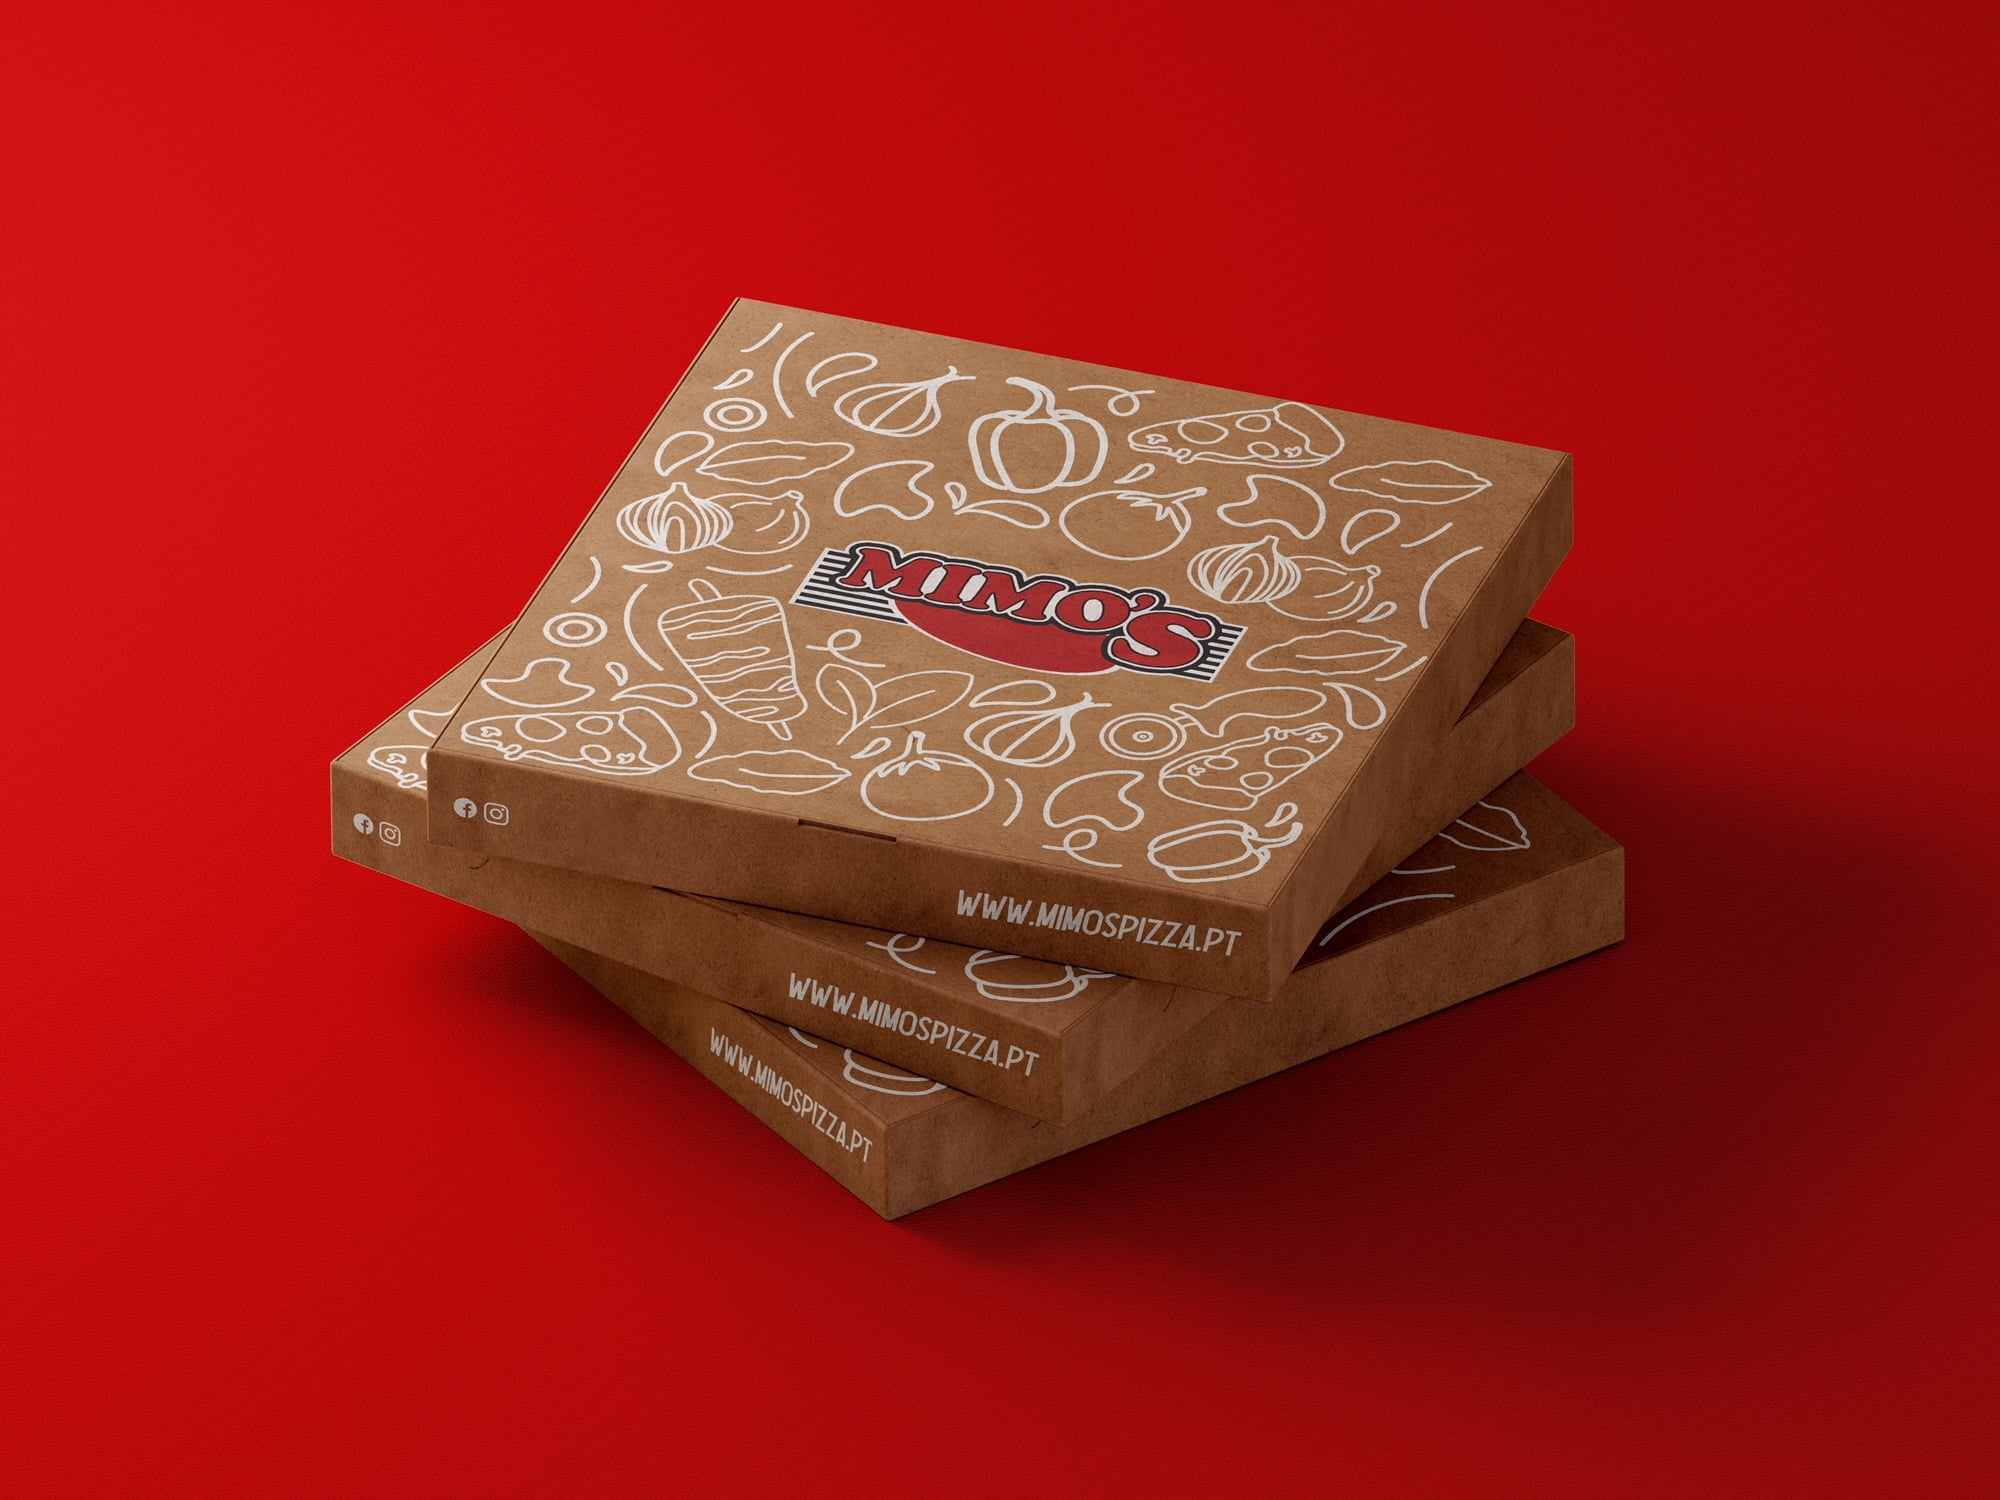 Design - Mimos Pizza